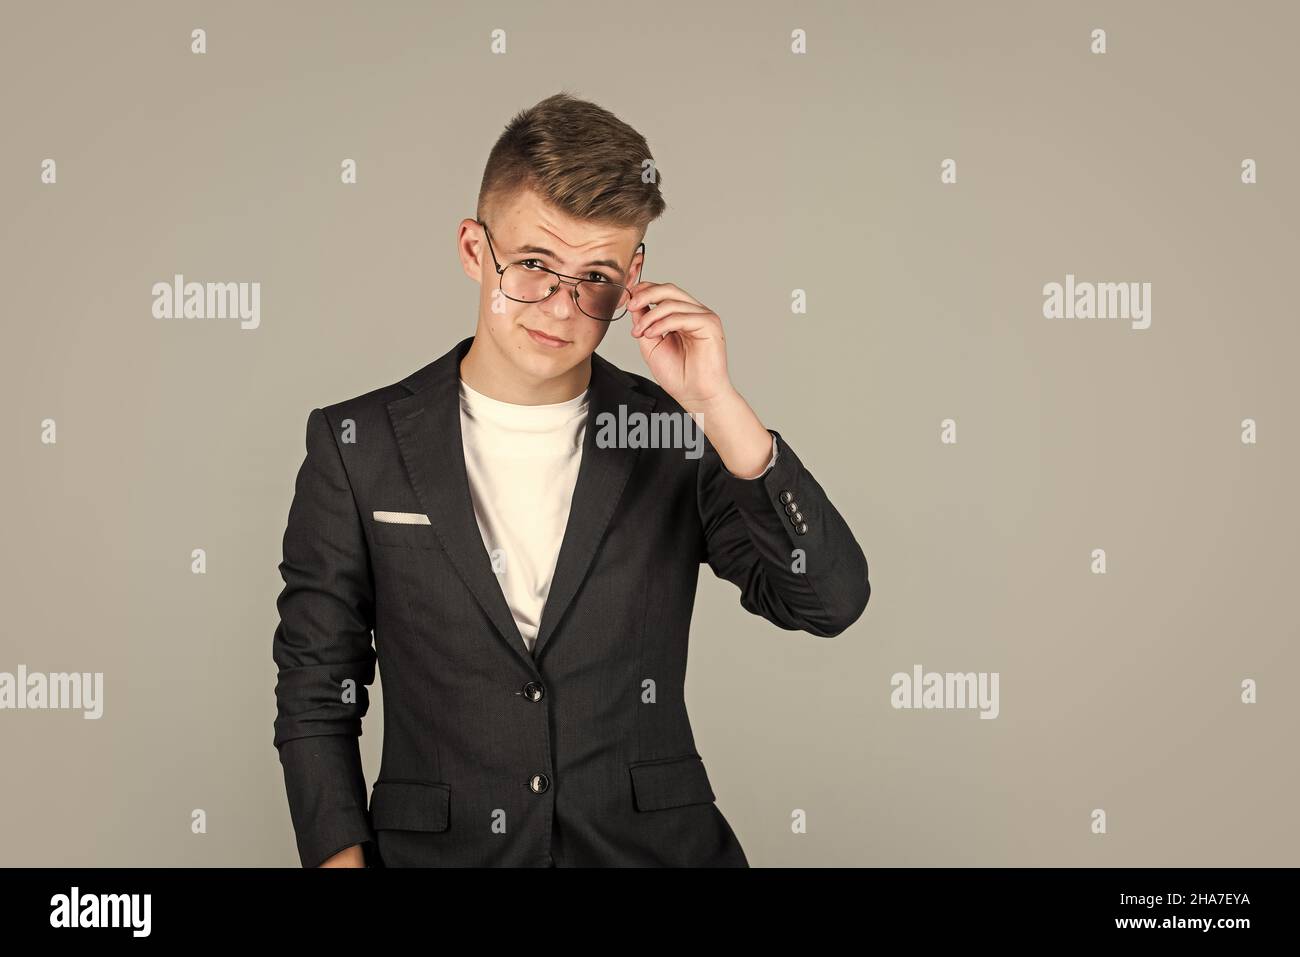 hombre de negocios de éxito. adolescente de moda. niño con chaqueta negra. niño seguro que lleva gafas. Foto de stock